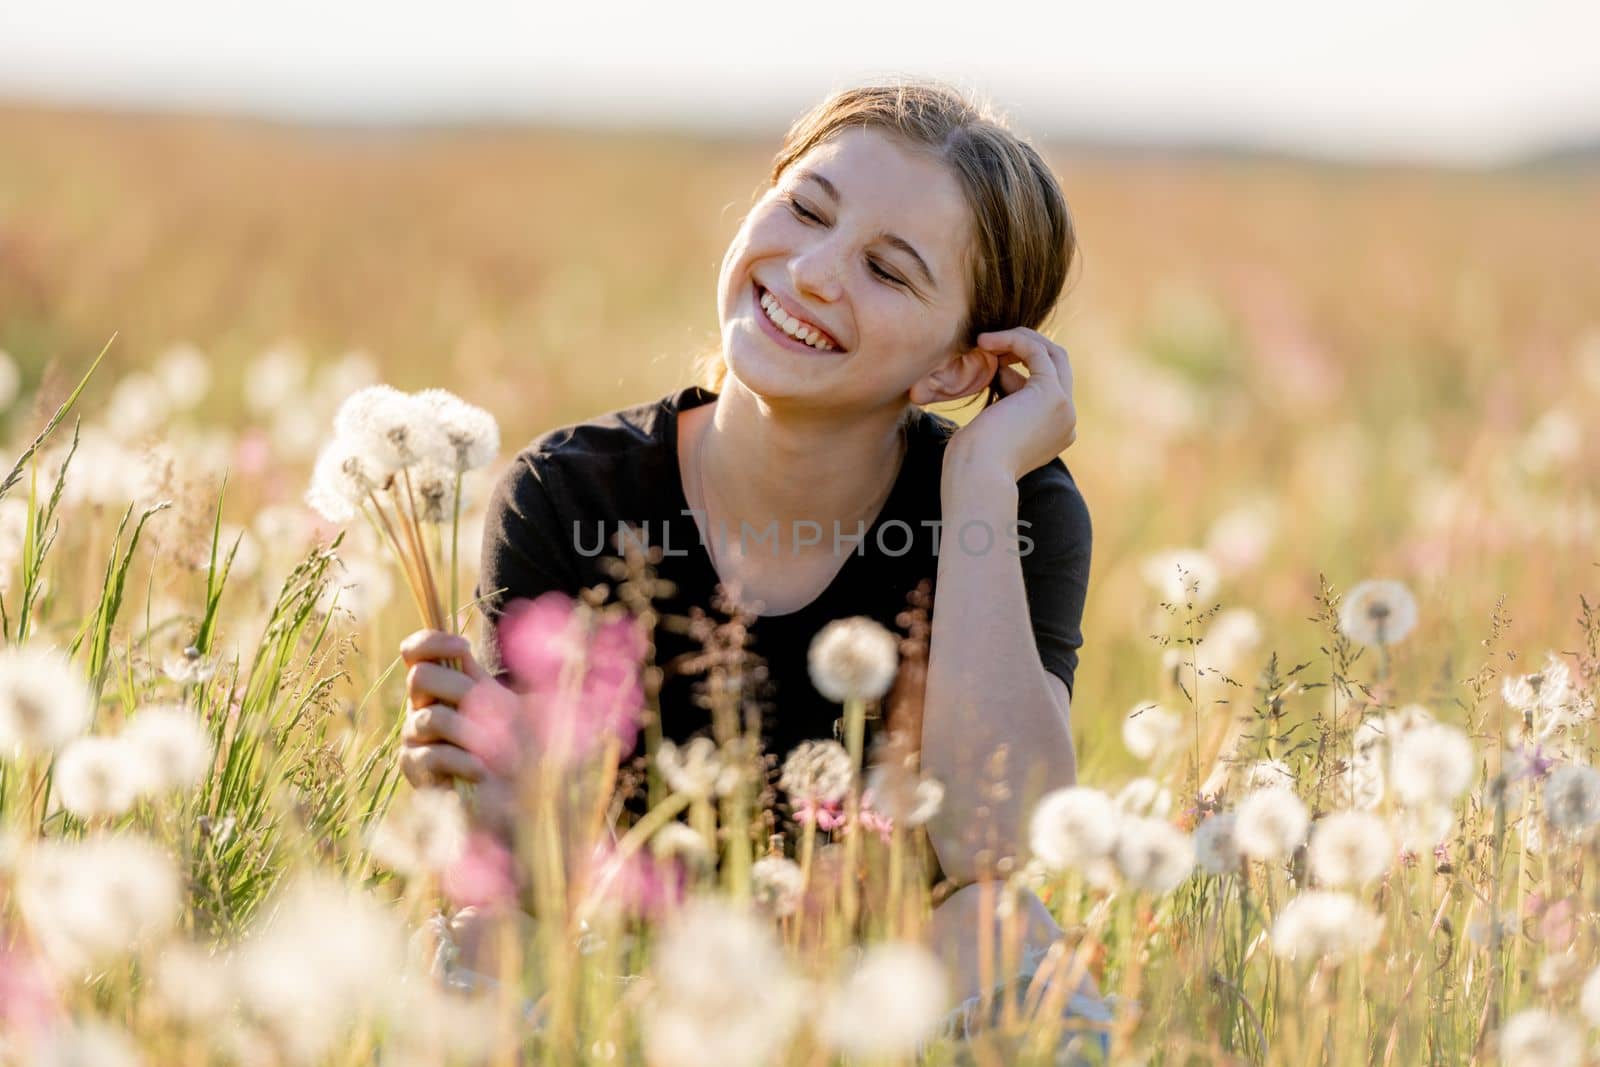 Pretty girl in field by tan4ikk1